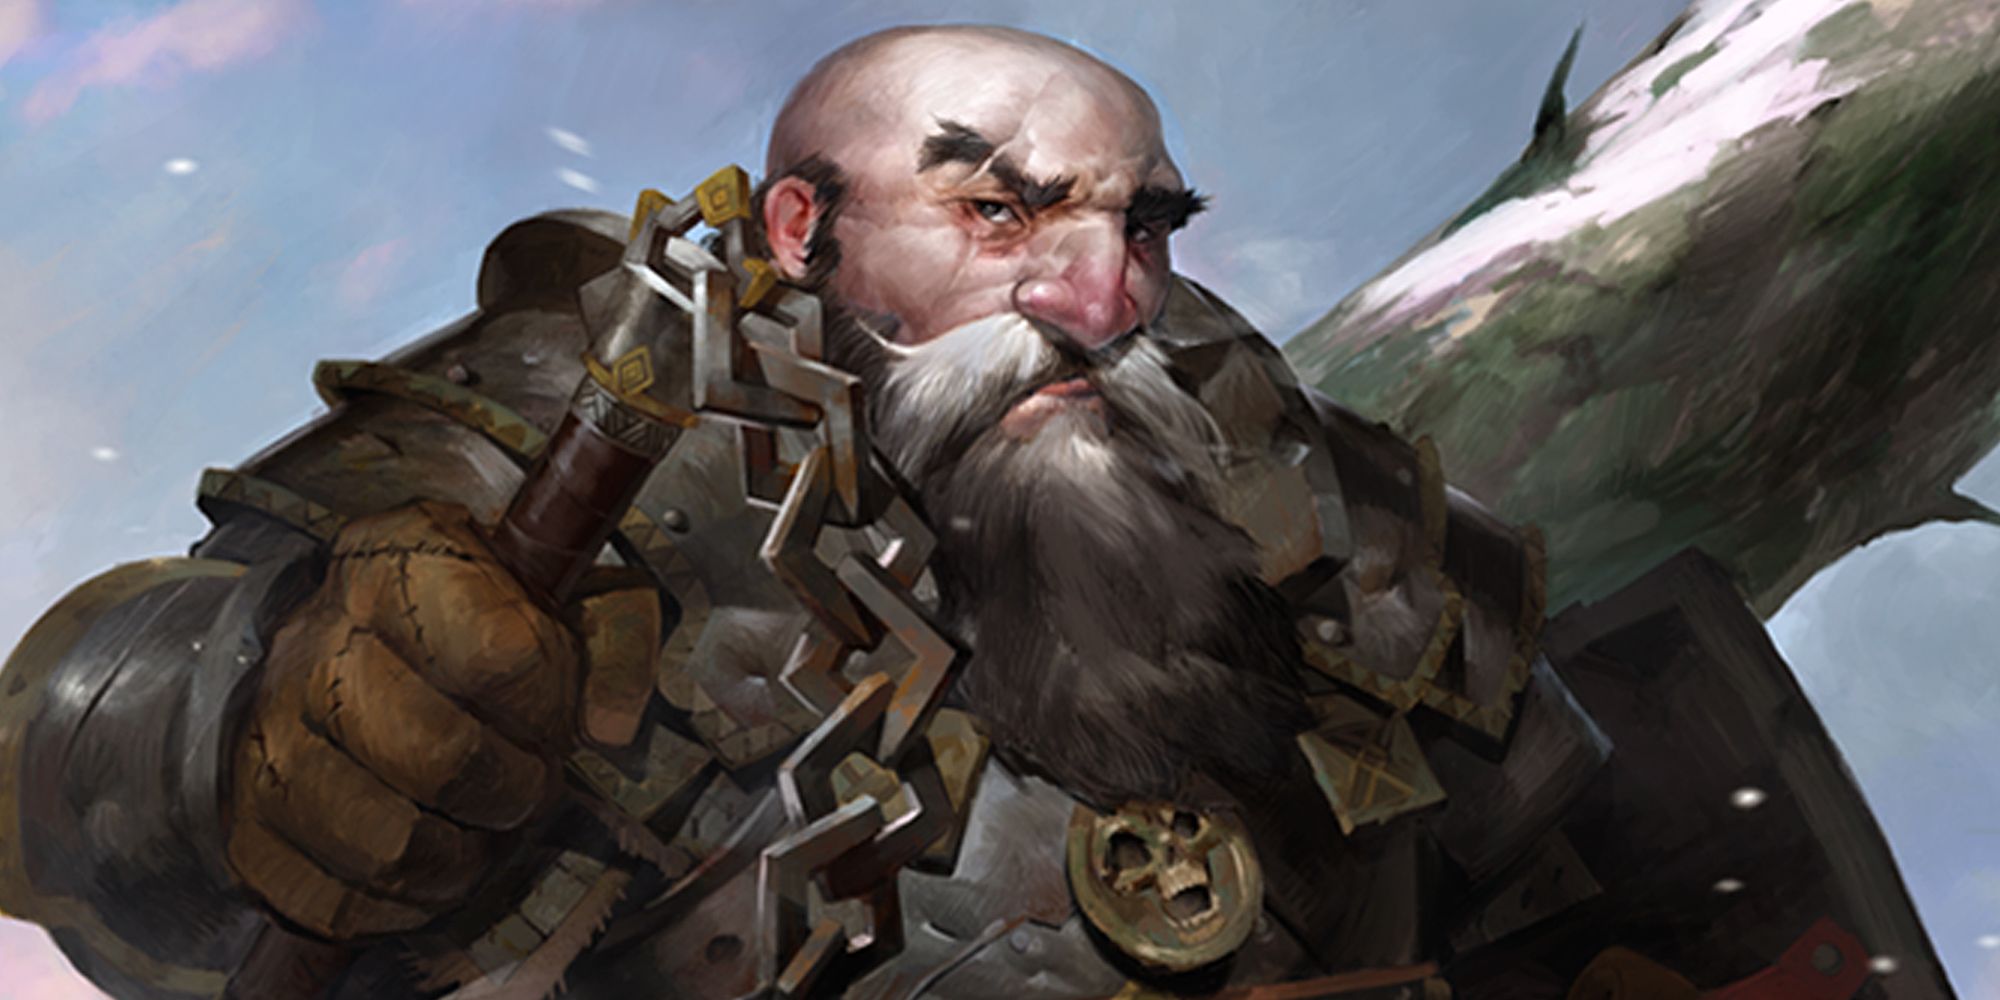 pathfinder: kingmaker character portrait of harrim